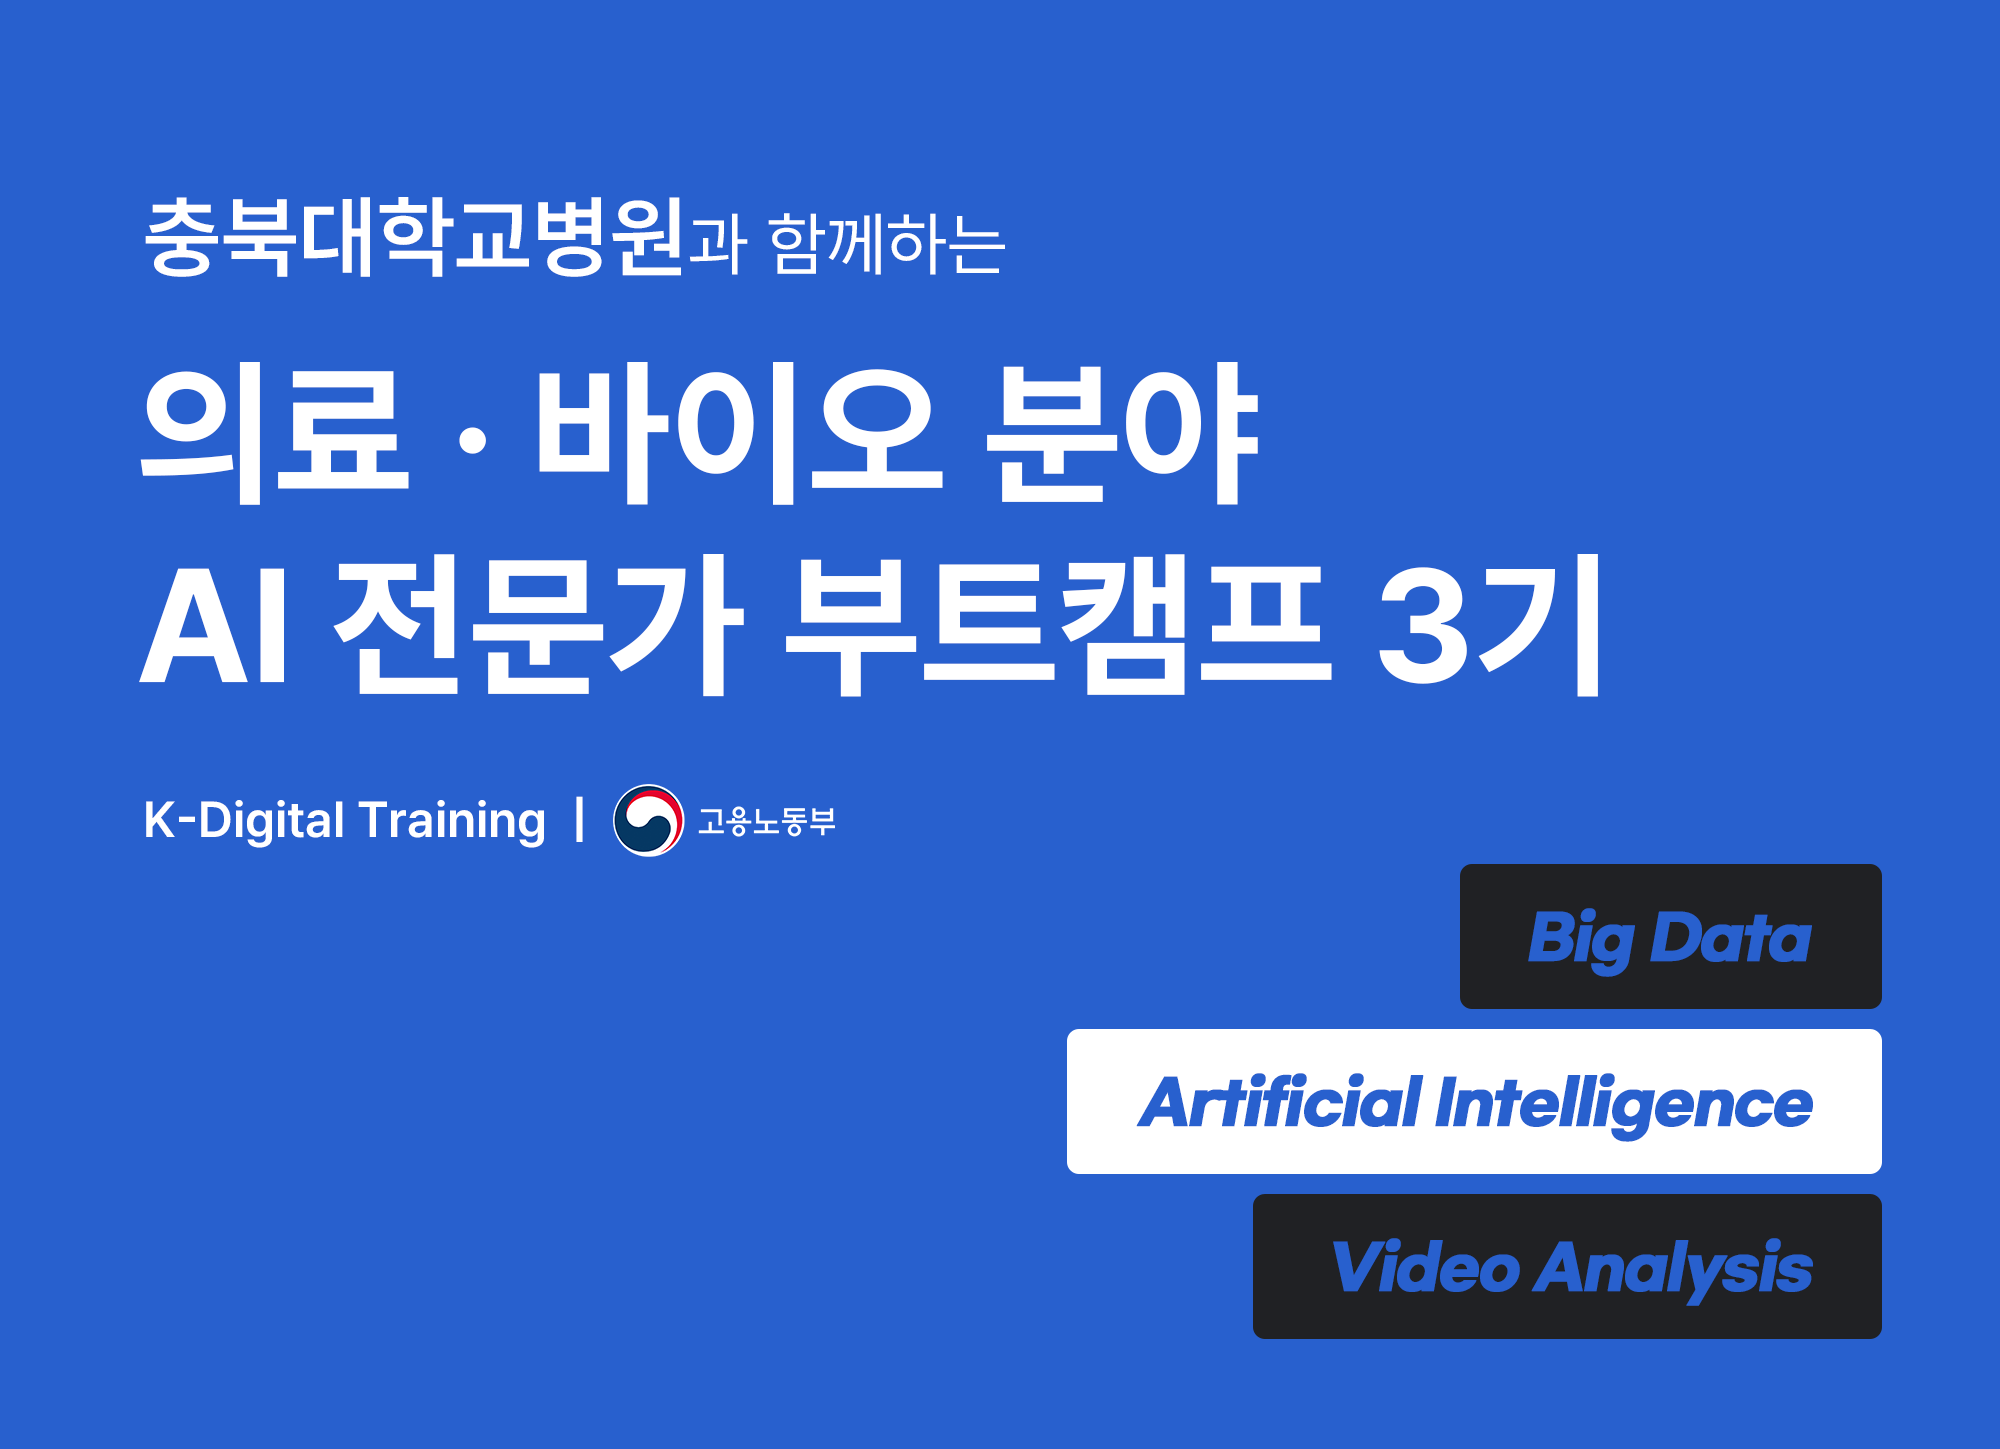 충북대학교병원과 함께하는 의료 바이오 분야 AI 전문가 부트캠프 3기 K-Digital Training 고용노동부 Big Data, Artificial Intelligence, Video Analysis